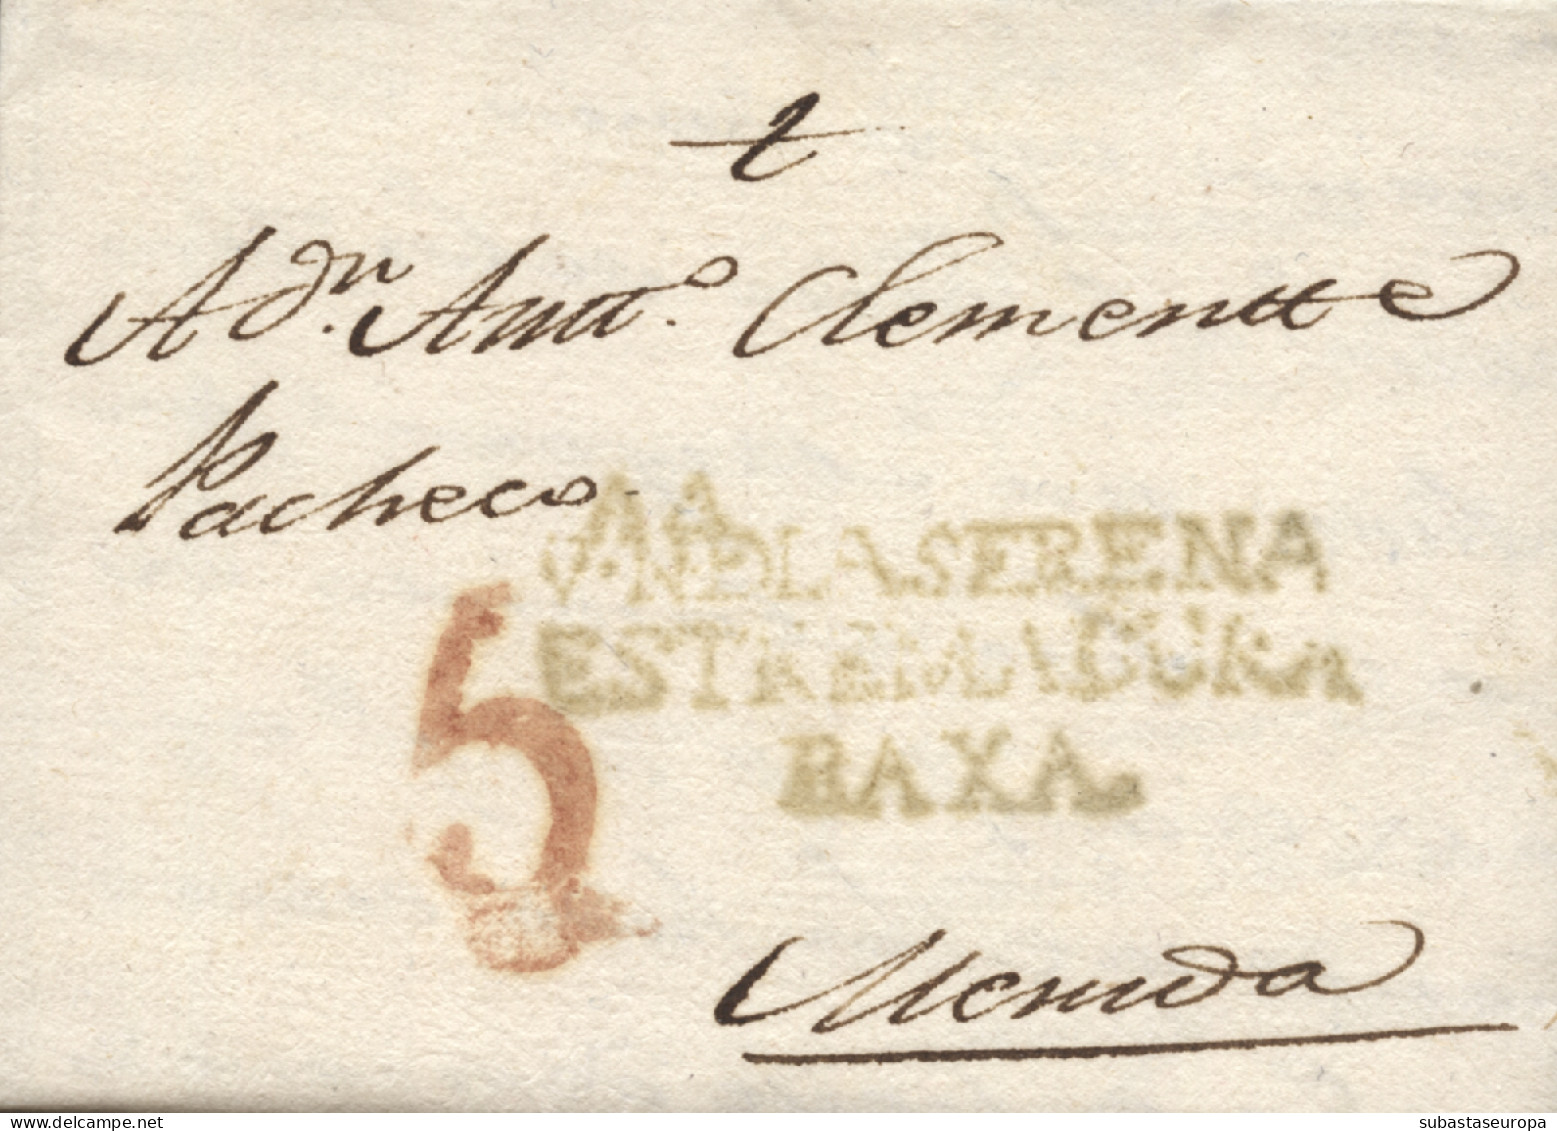 D.P. 13. 1807 (10 FEB). Carta De Villanueva De La Serena A Mérida. Marca Nº 3V. - ...-1850 Voorfilatelie